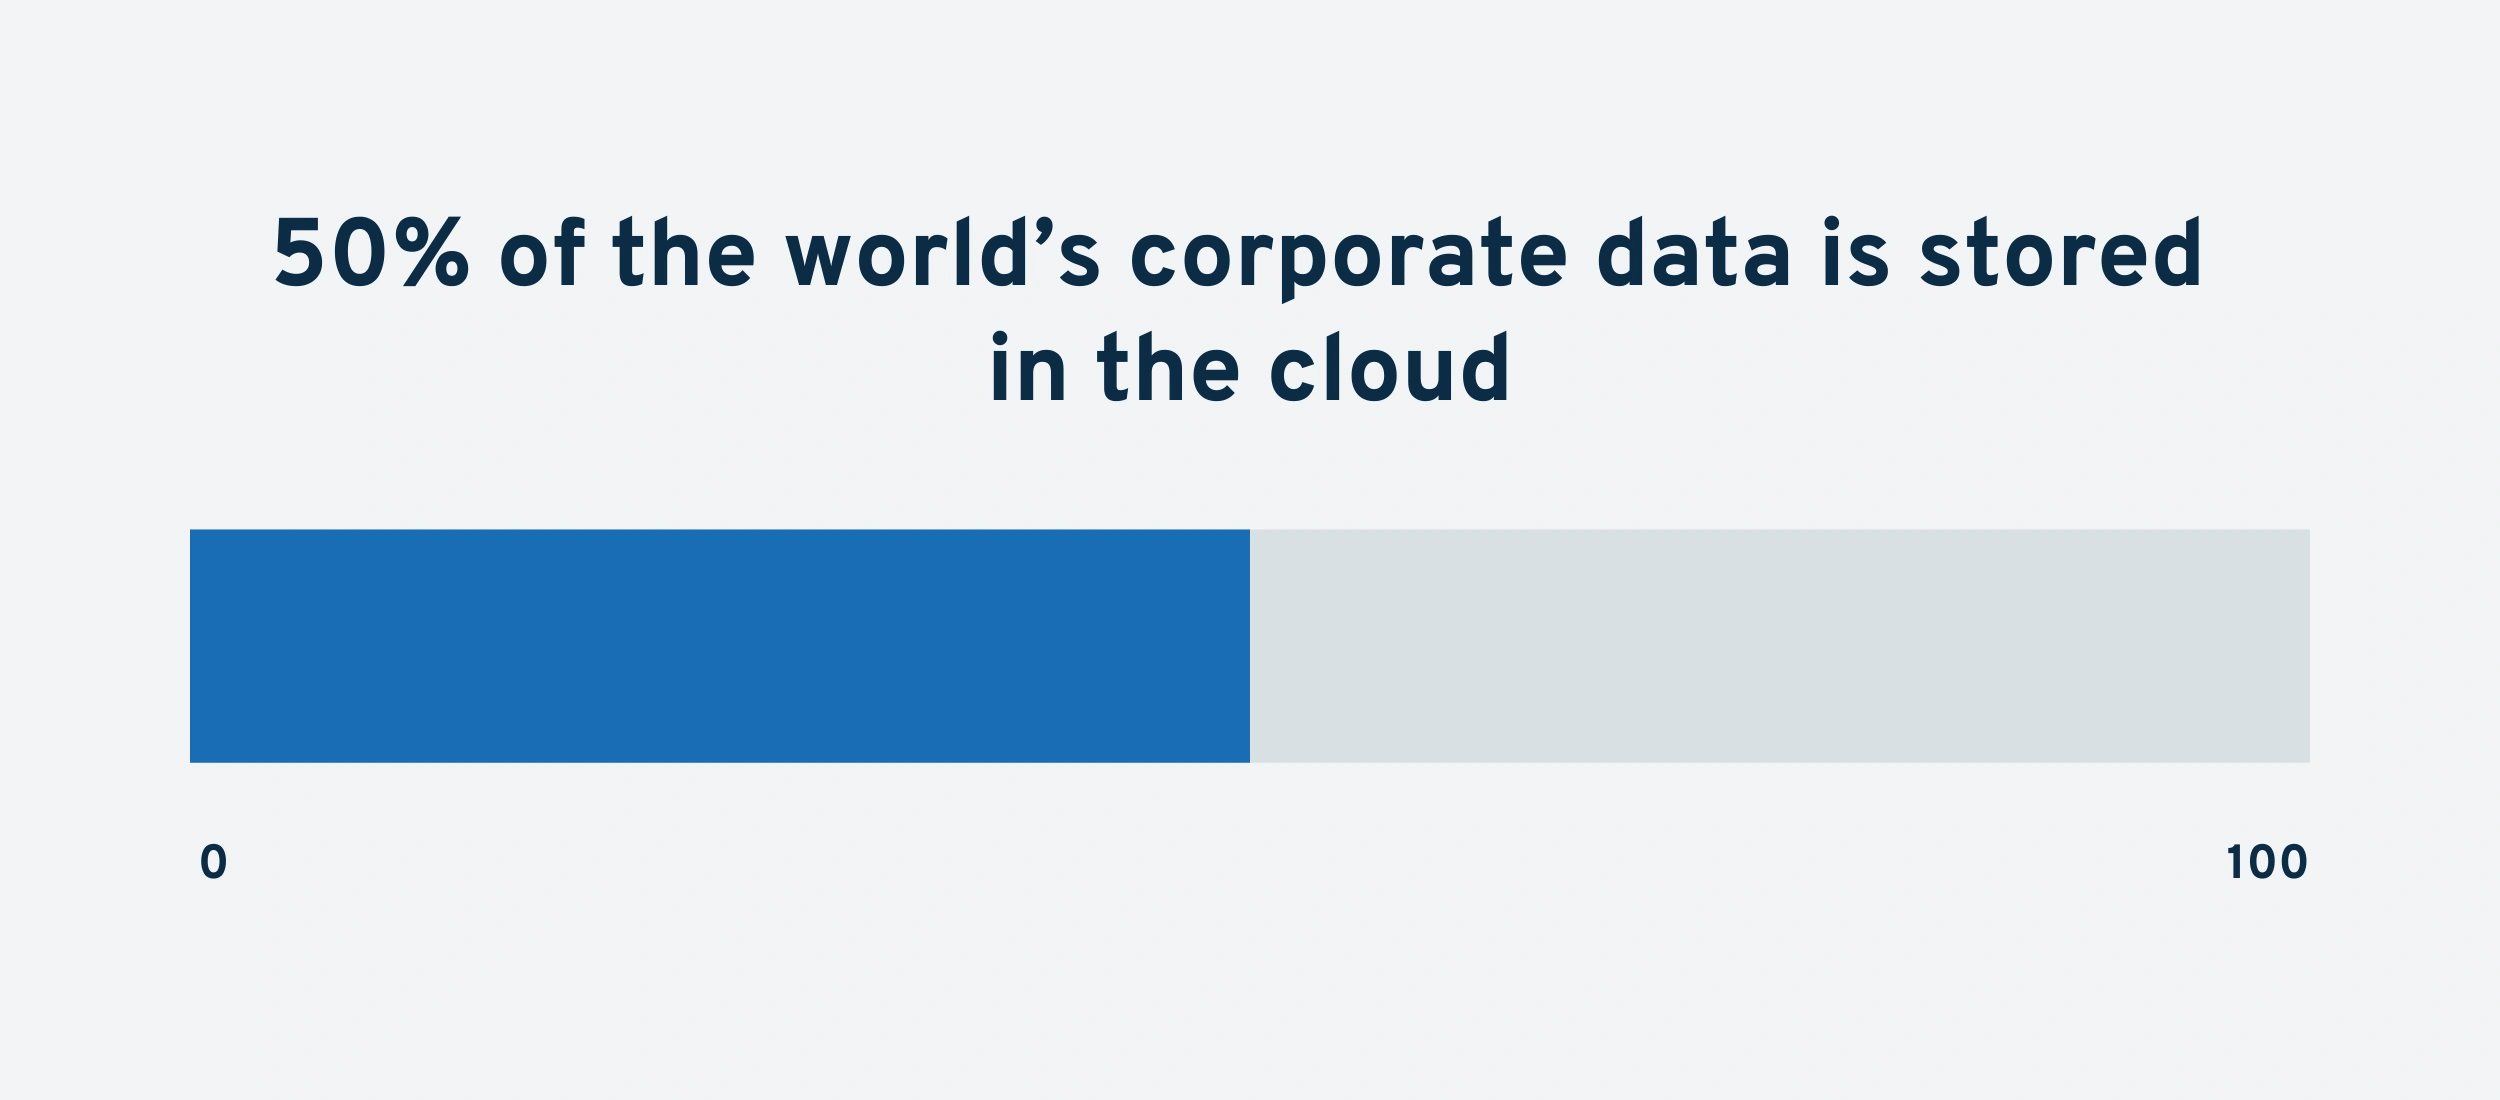 corporate-data-in-cloud-min.png